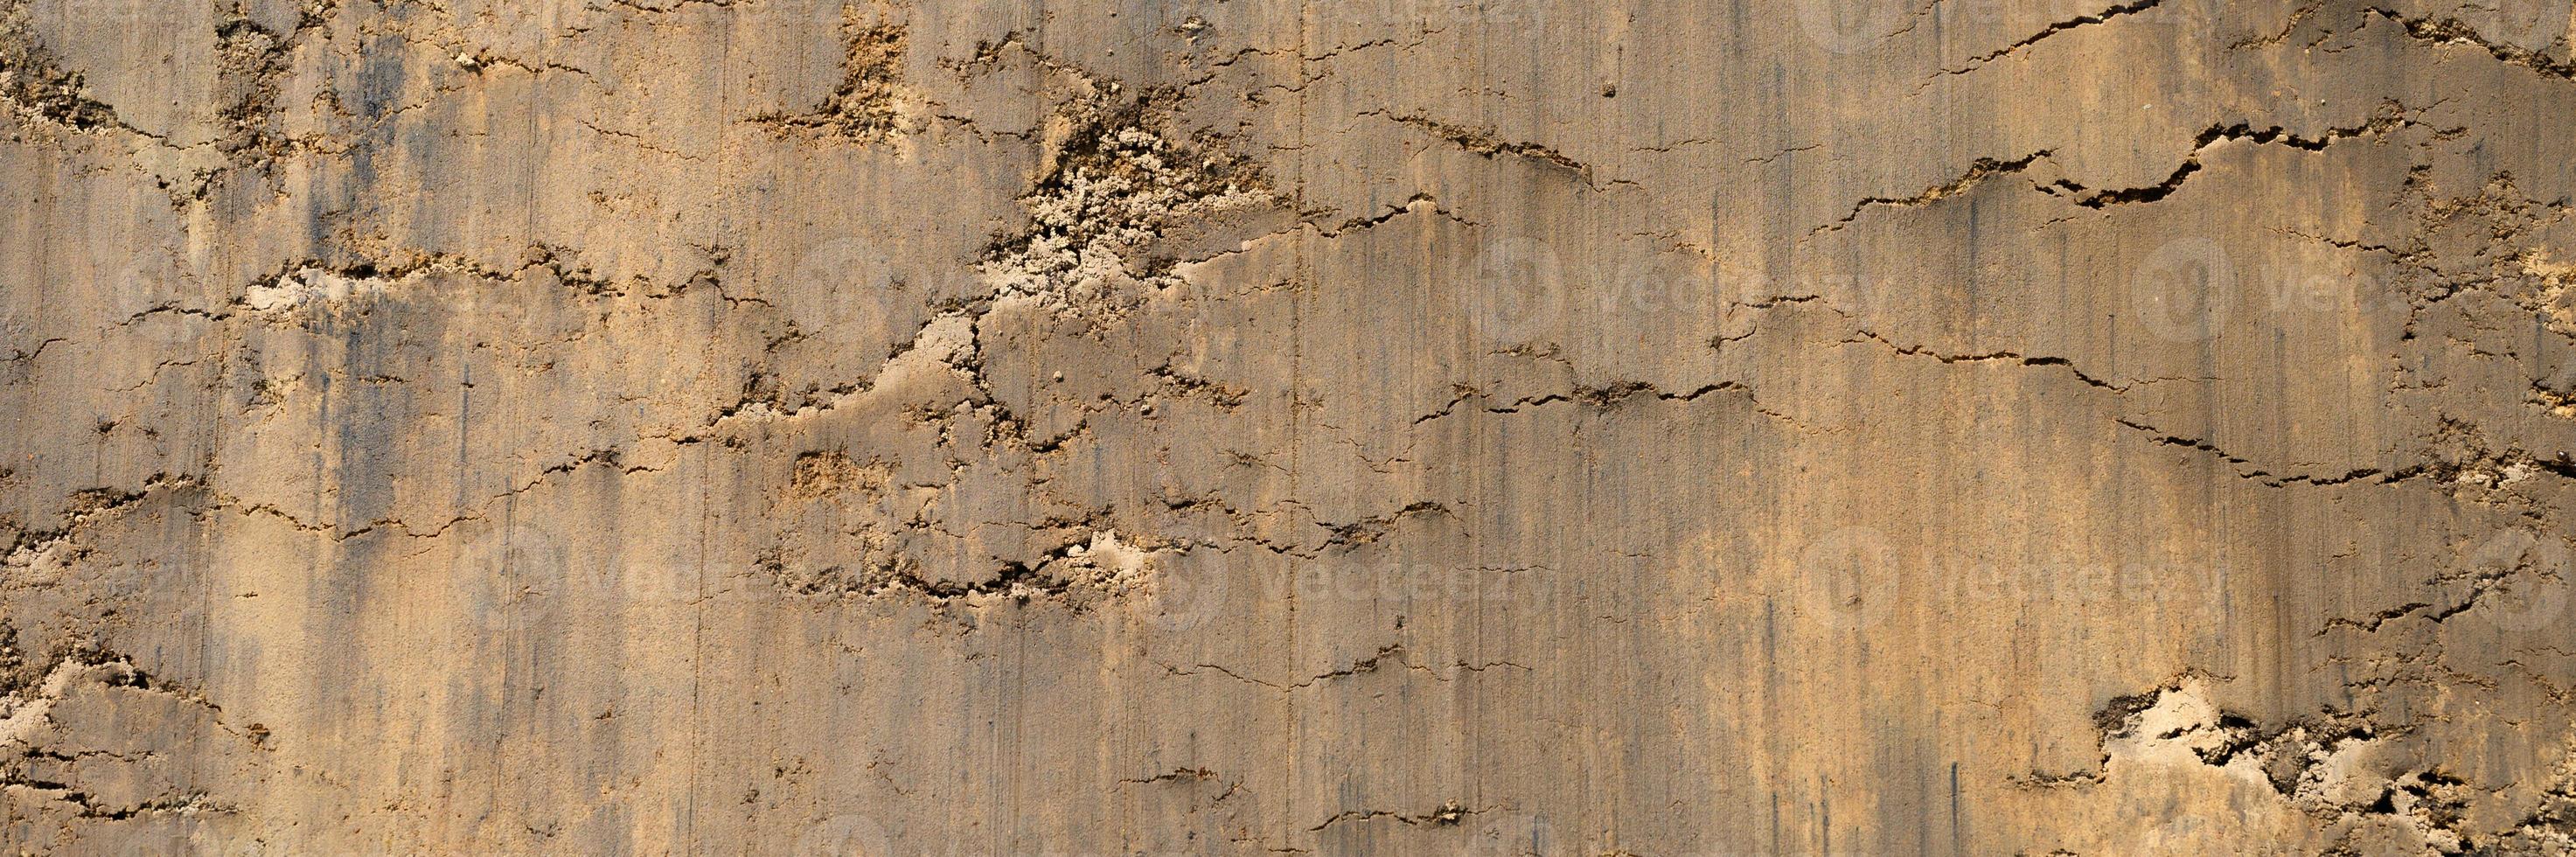 trama di sfondo dalla superficie sciolta del suolo di sabbia e terra foto